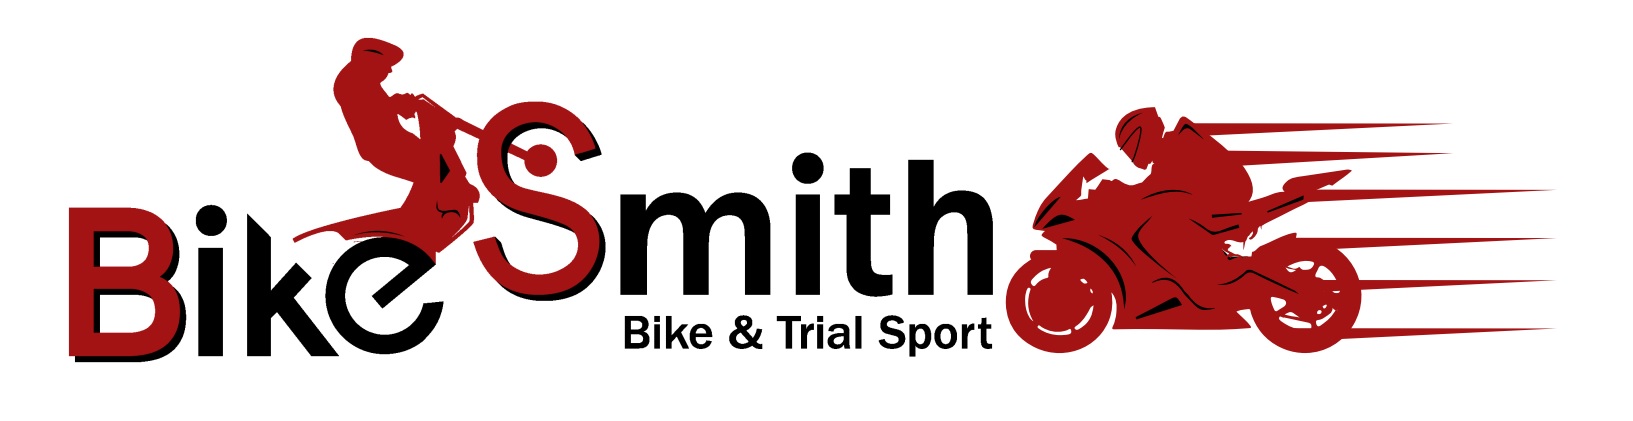 BikeSmith - Bike & Trial Sport